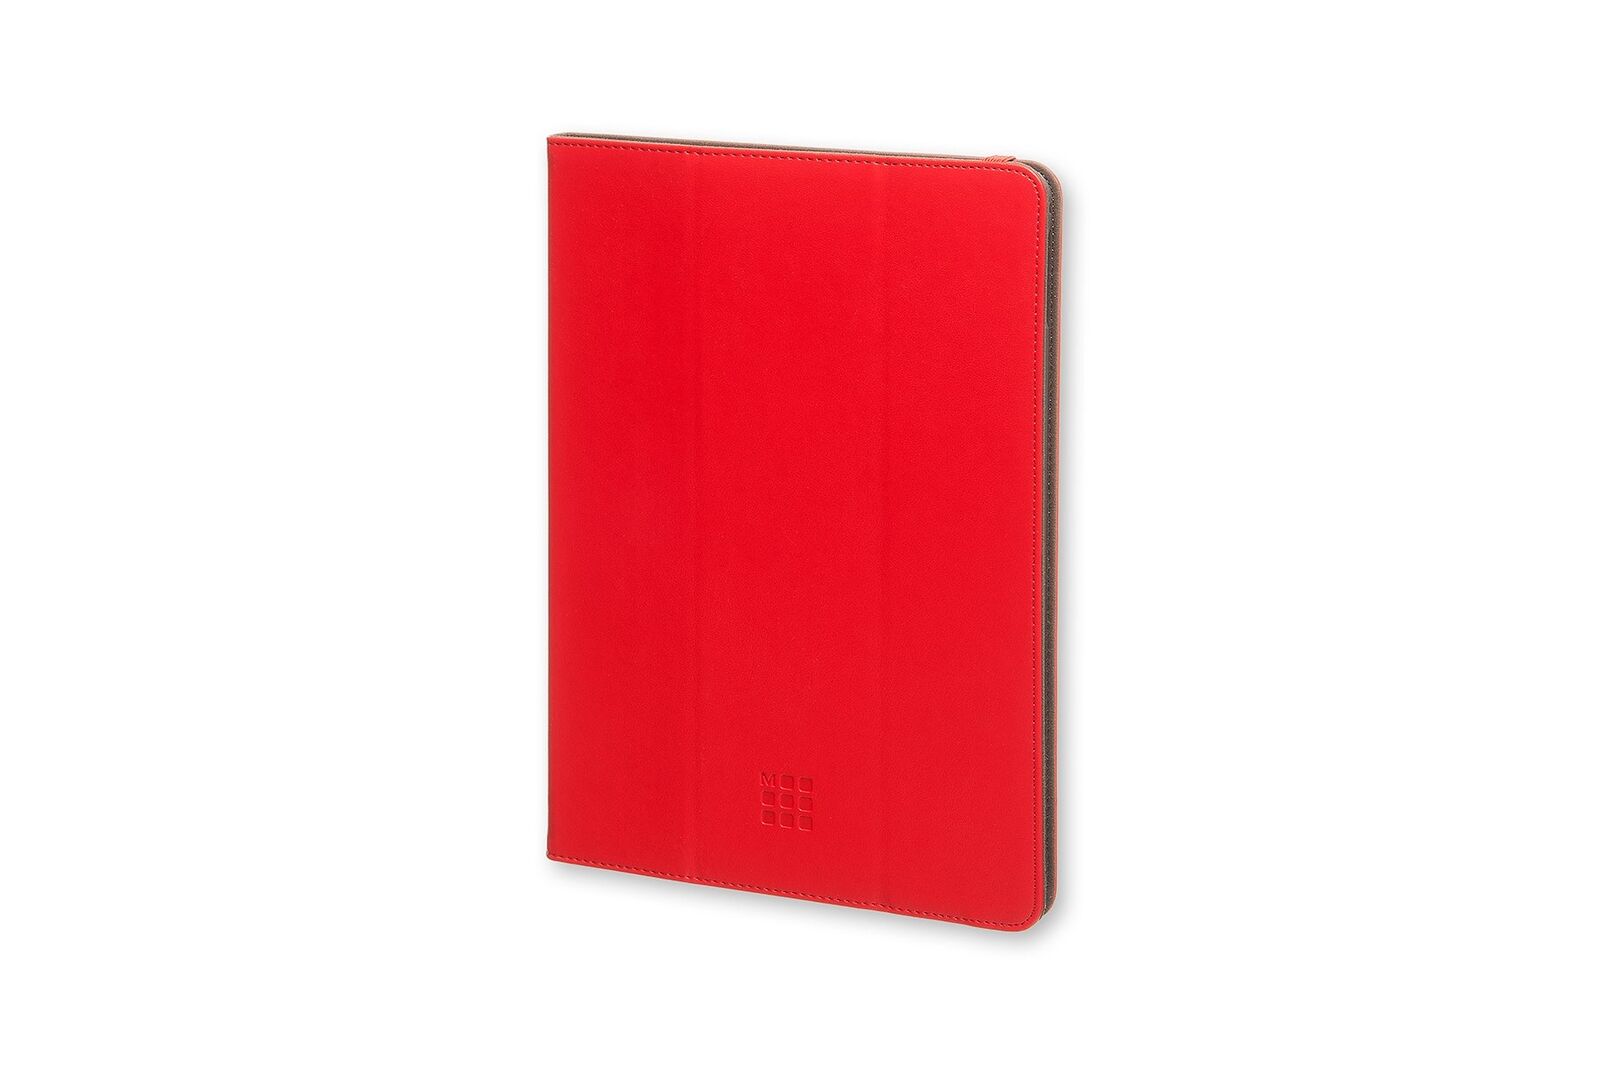 Moleskine Classic Original Scarlet Red iPad Air 2 Case